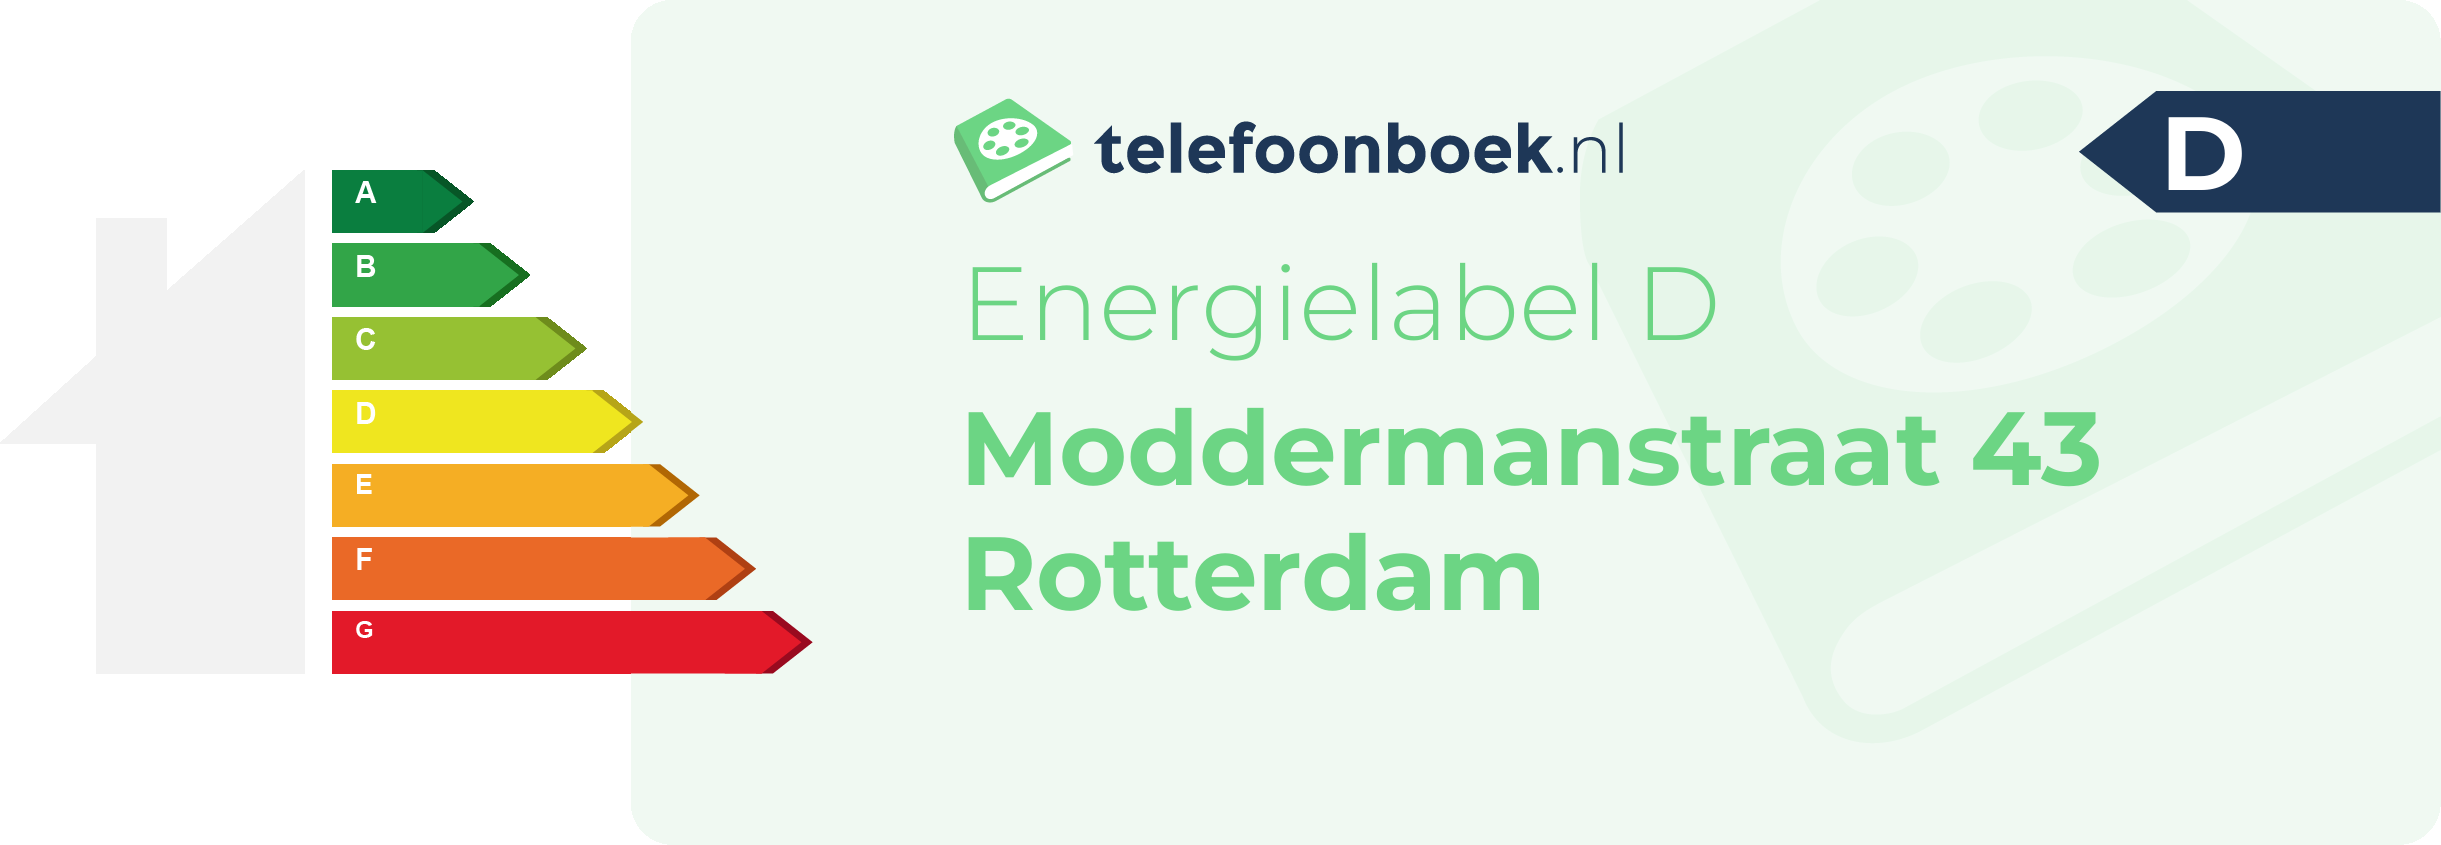 Energielabel Moddermanstraat 43 Rotterdam